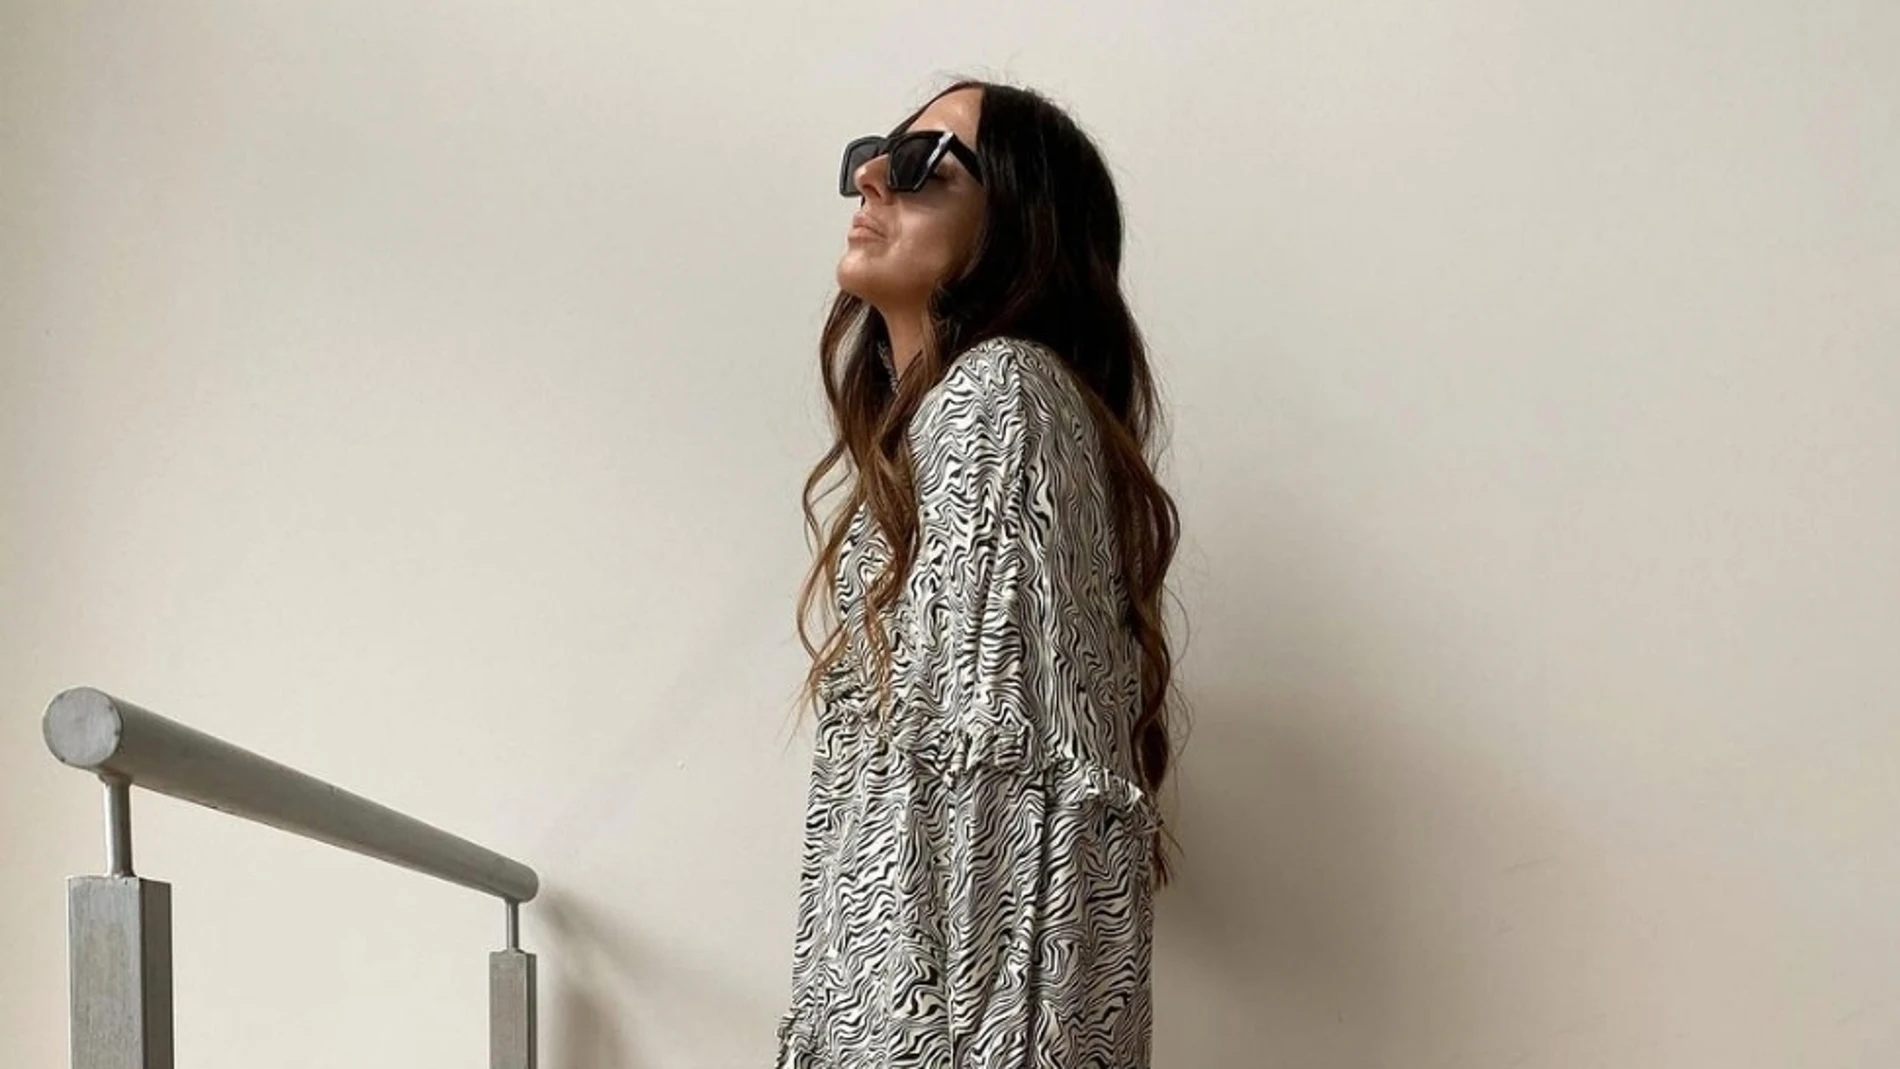 Laura Eguizabal con vestido camisero con estampado animal/ Instagram @laura_eguizabal